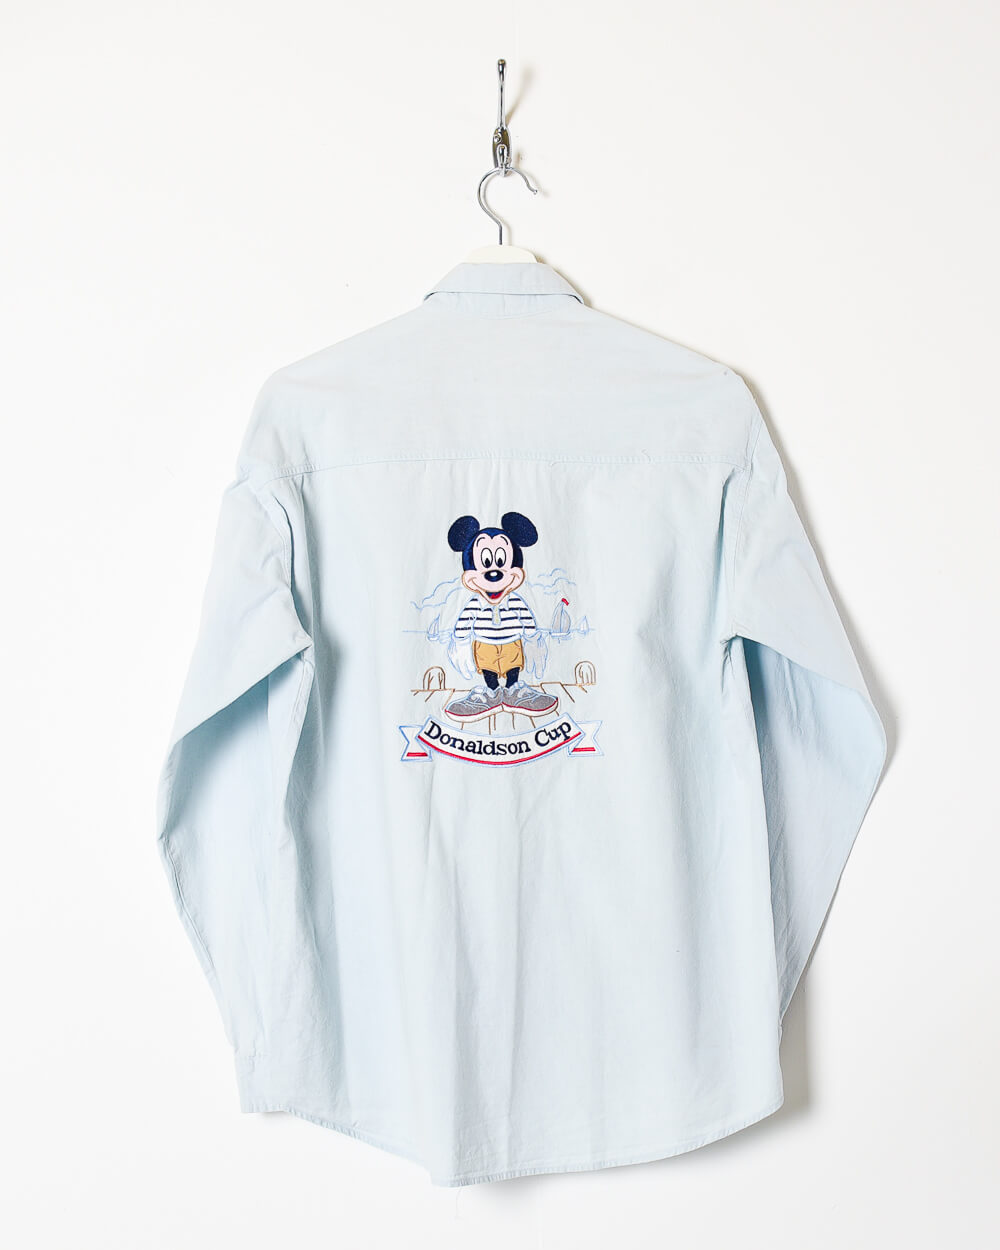 Baby Donaldson Shirt - Medium